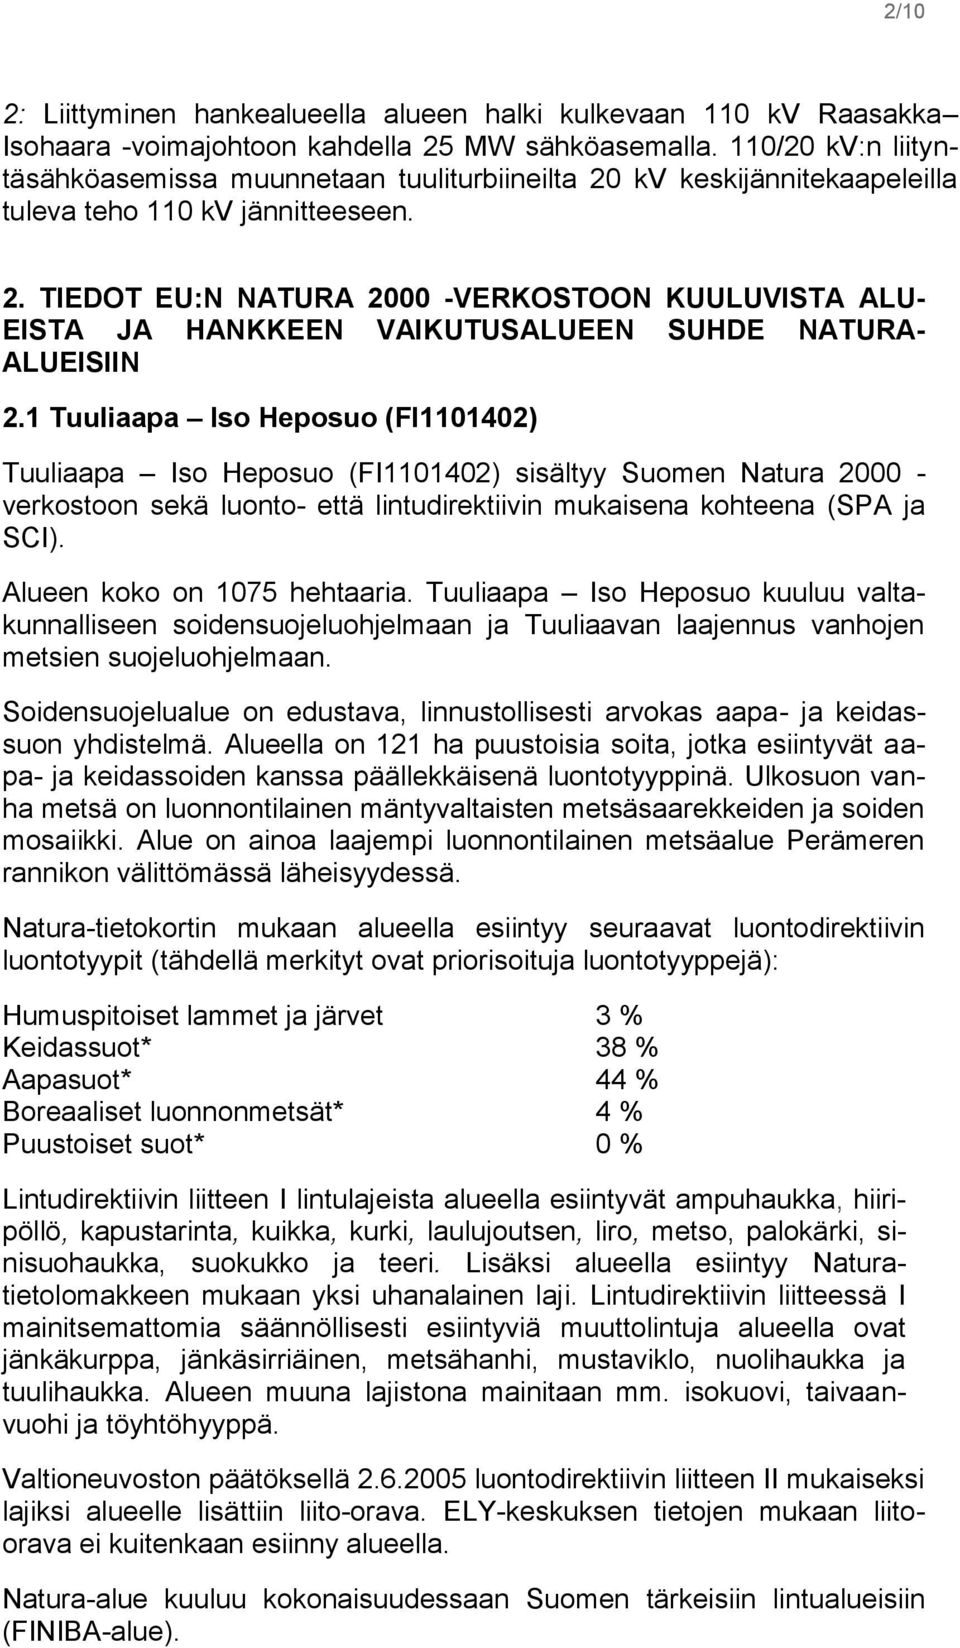 1 Tuuliaapa Iso Heposuo (FI1101402) Tuuliaapa Iso Heposuo (FI1101402) sisältyy Suomen Natura 2000 - verkostoon sekä luonto- että lintudirektiivin mukaisena kohteena (SPA ja SCI).